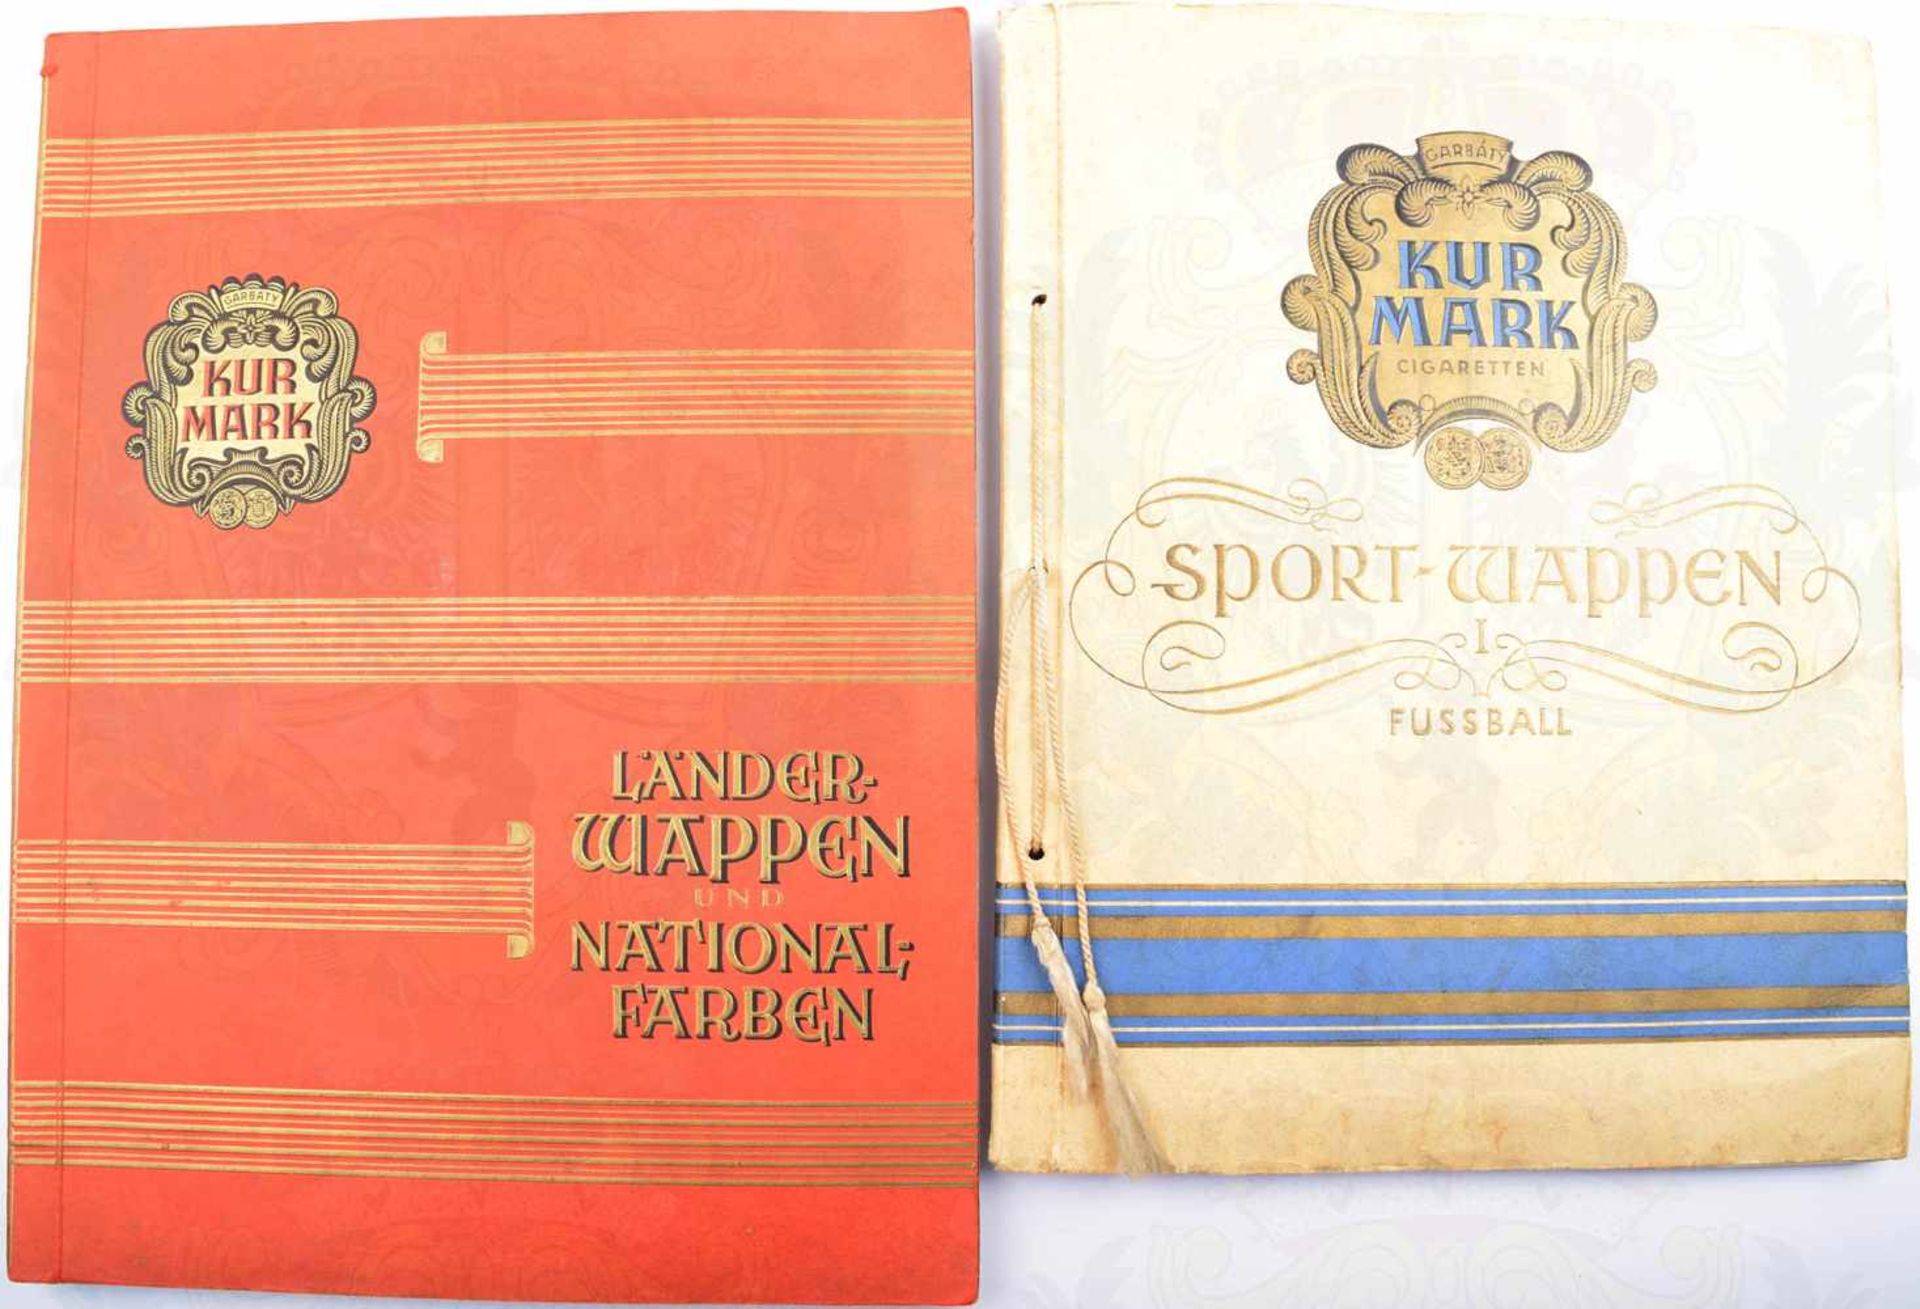 2 ALBEN KURMARK-WAPPEN: „Sport-Wappen I Fussball“, Garbaty 1929, 645 Bilder, m. Meisterschafts-